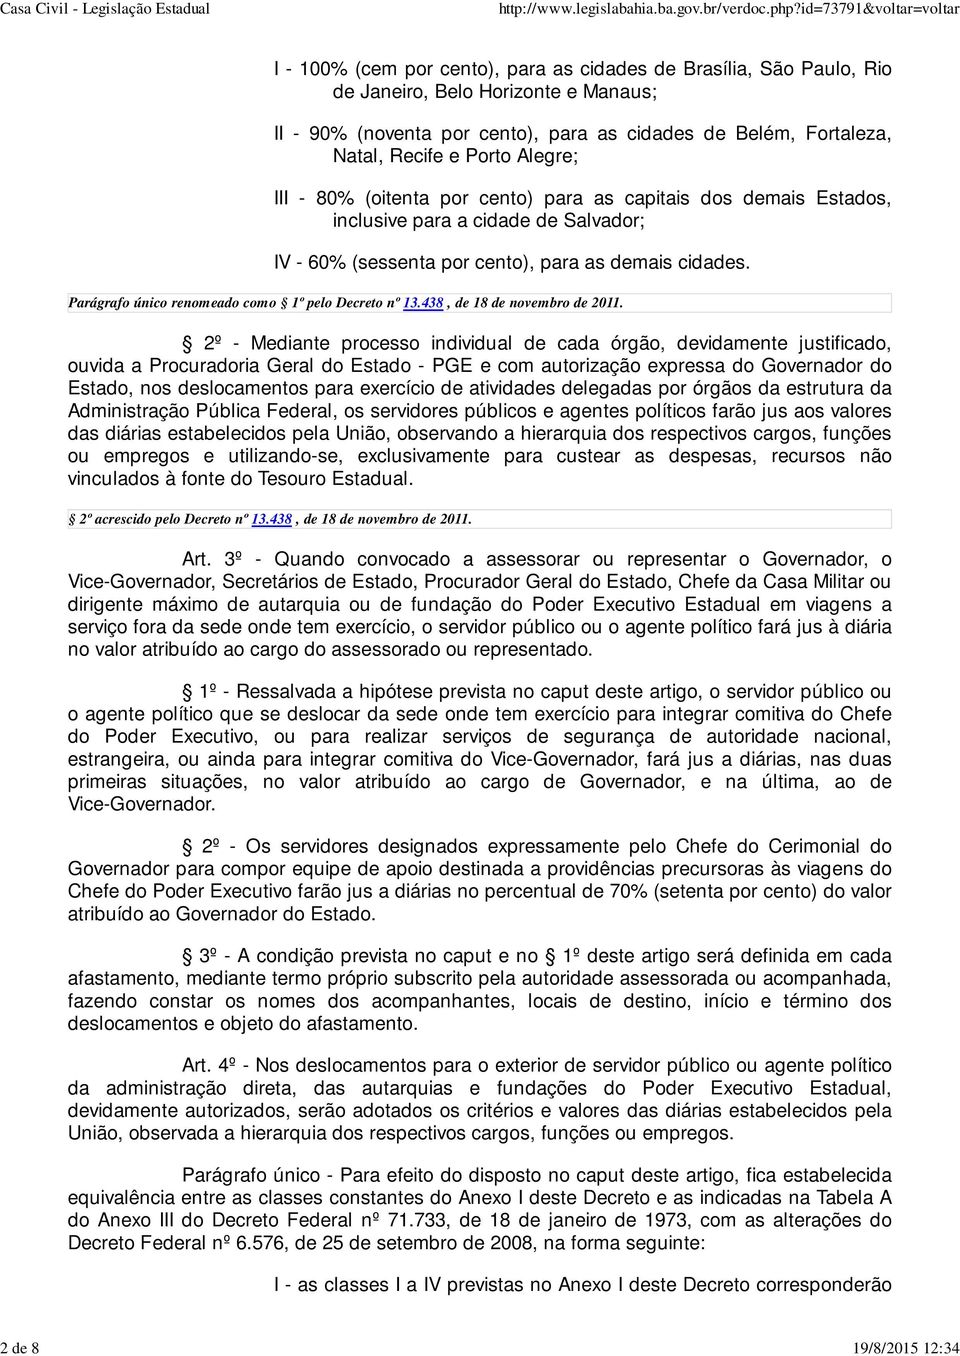 Parágrafo único renomeado como 1º pelo Decreto nº 13.438, de 18 de novembro de 2011.